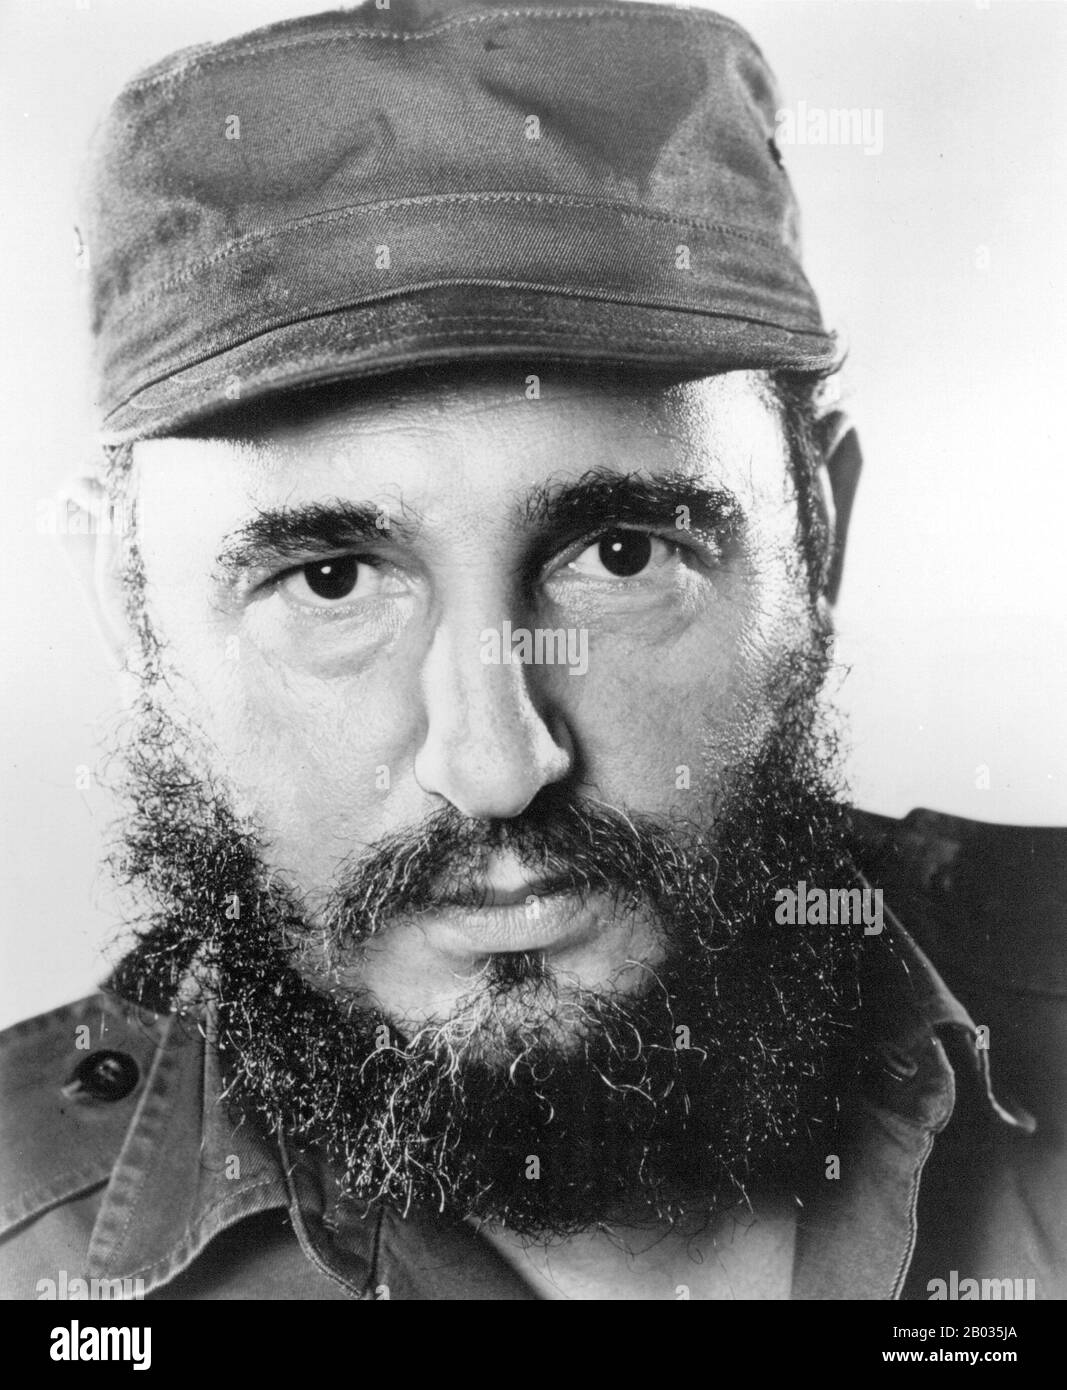 Fidel Alejandro Castro Ruz (* 13. August 1926) ist ein kubanischer politischer Führer und ehemaliger kommunistischer Revolutionär. Als primärer Führer der kubanischen Revolution war Castro von Februar 1959 bis Dezember 1976 Premierminister Kubas. Und dann als Präsident des Staatsrates von Kuba und als Präsident des Ministerrates von Kuba bis zu seinem Rücktritt vom Amt im Februar 2008. Er war von der Parteiengründung im Jahr 1961 erster Sekretär der Kommunistischen Partei Kubas. Stockfoto